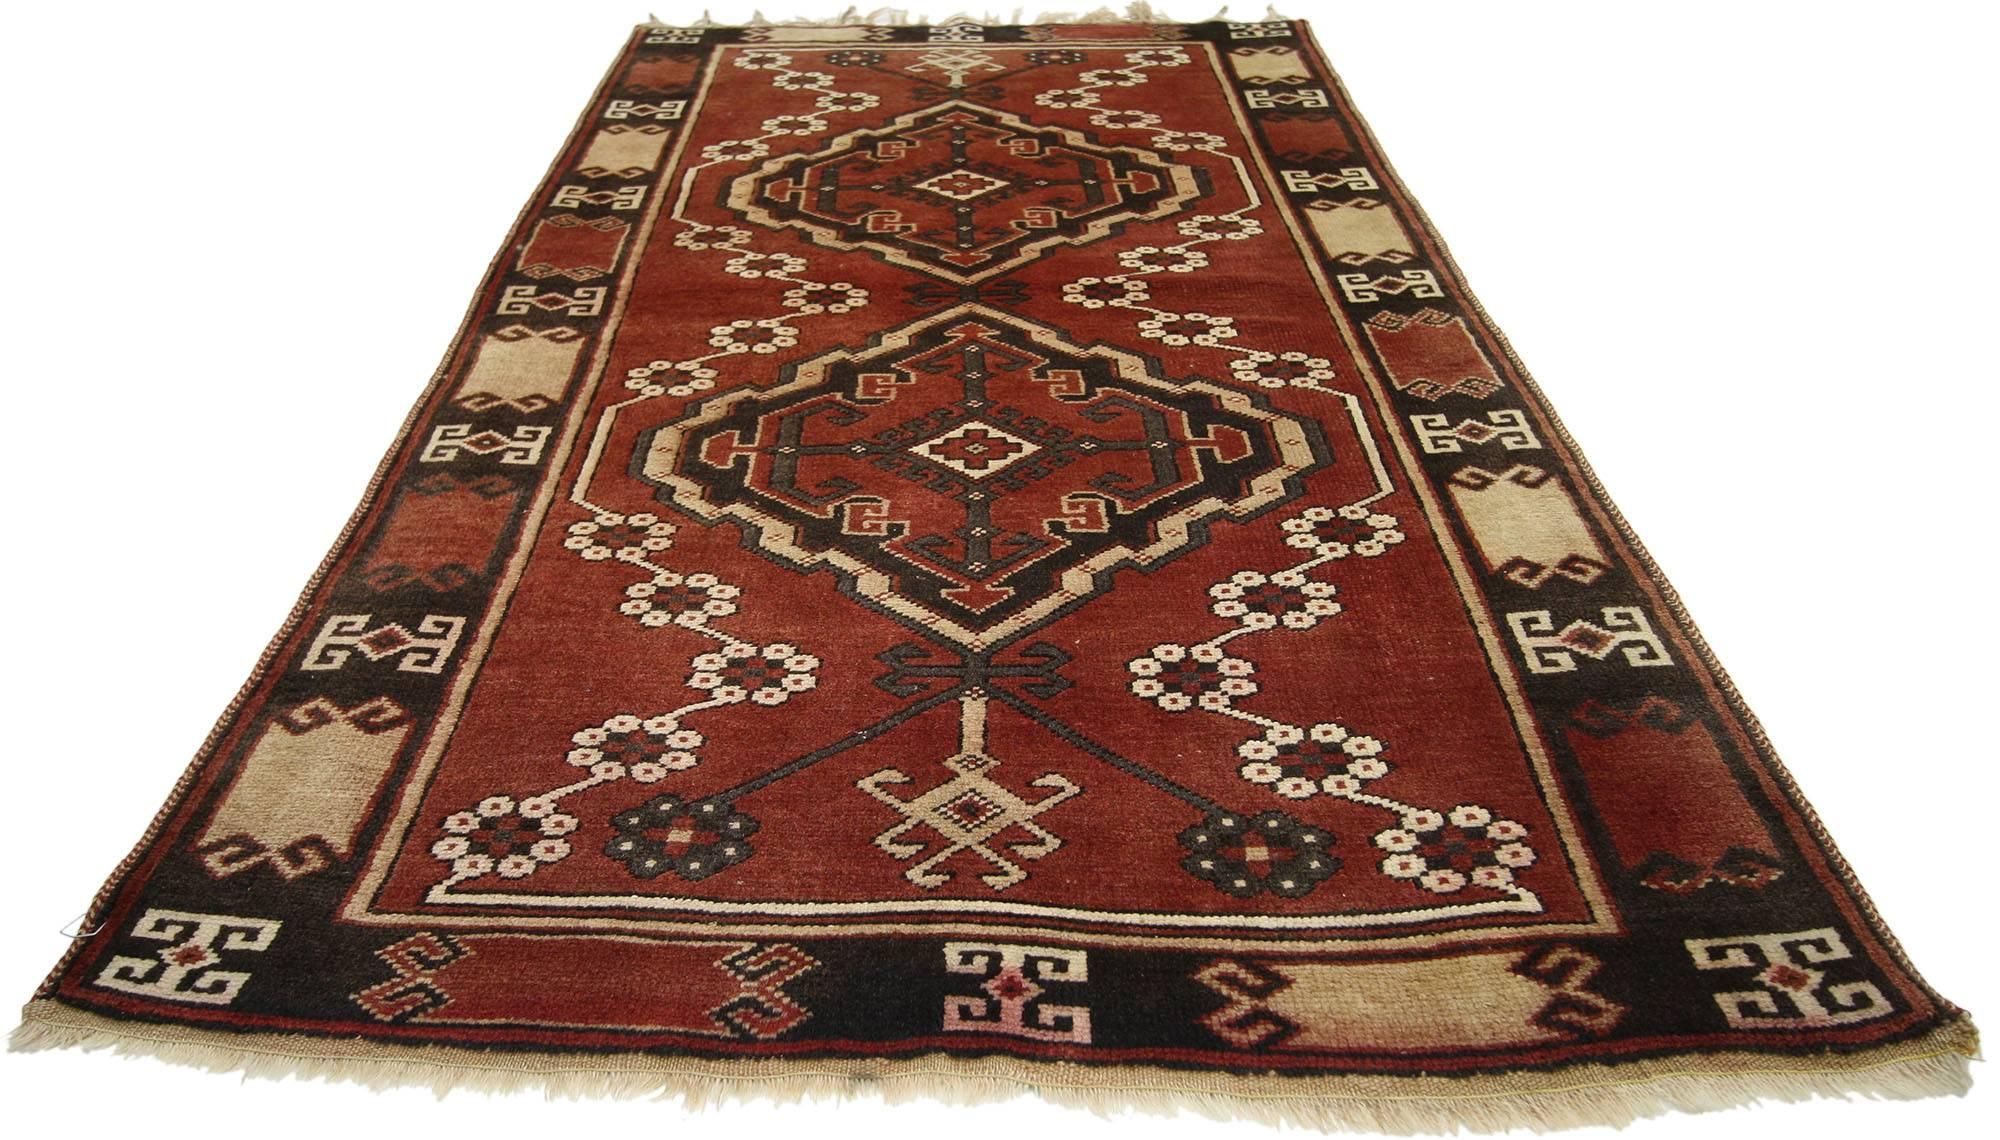 74500, ein alter Oushak-Teppich mit Stammesmotiv. Dieser alte türkische Oushak-Teppich aus handgeknüpfter Wolle zeigt doppelte Amulette mit geometrischen Mustern auf einem Feld in rustikalem Ziegelrot. Die Amulette bestehen aus miteinander